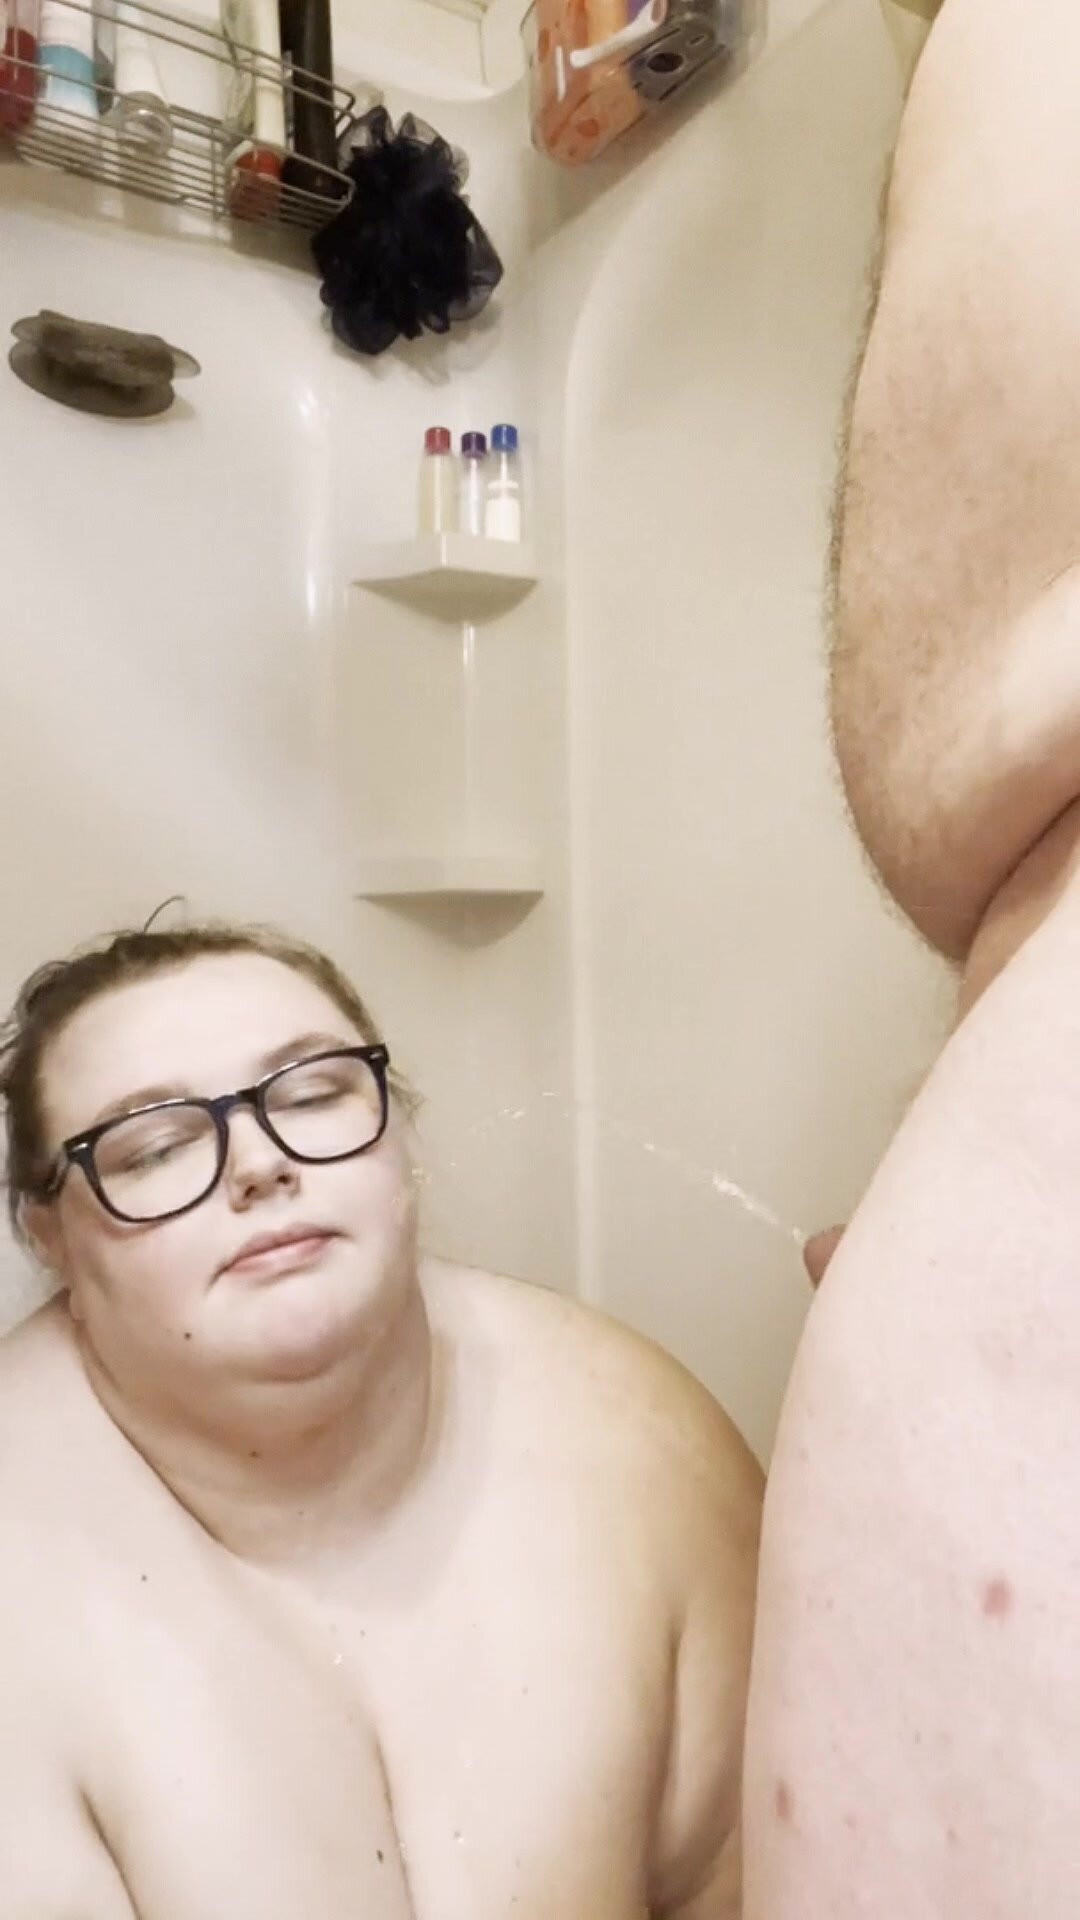 Boyfriend Pisses On BBW In Shower